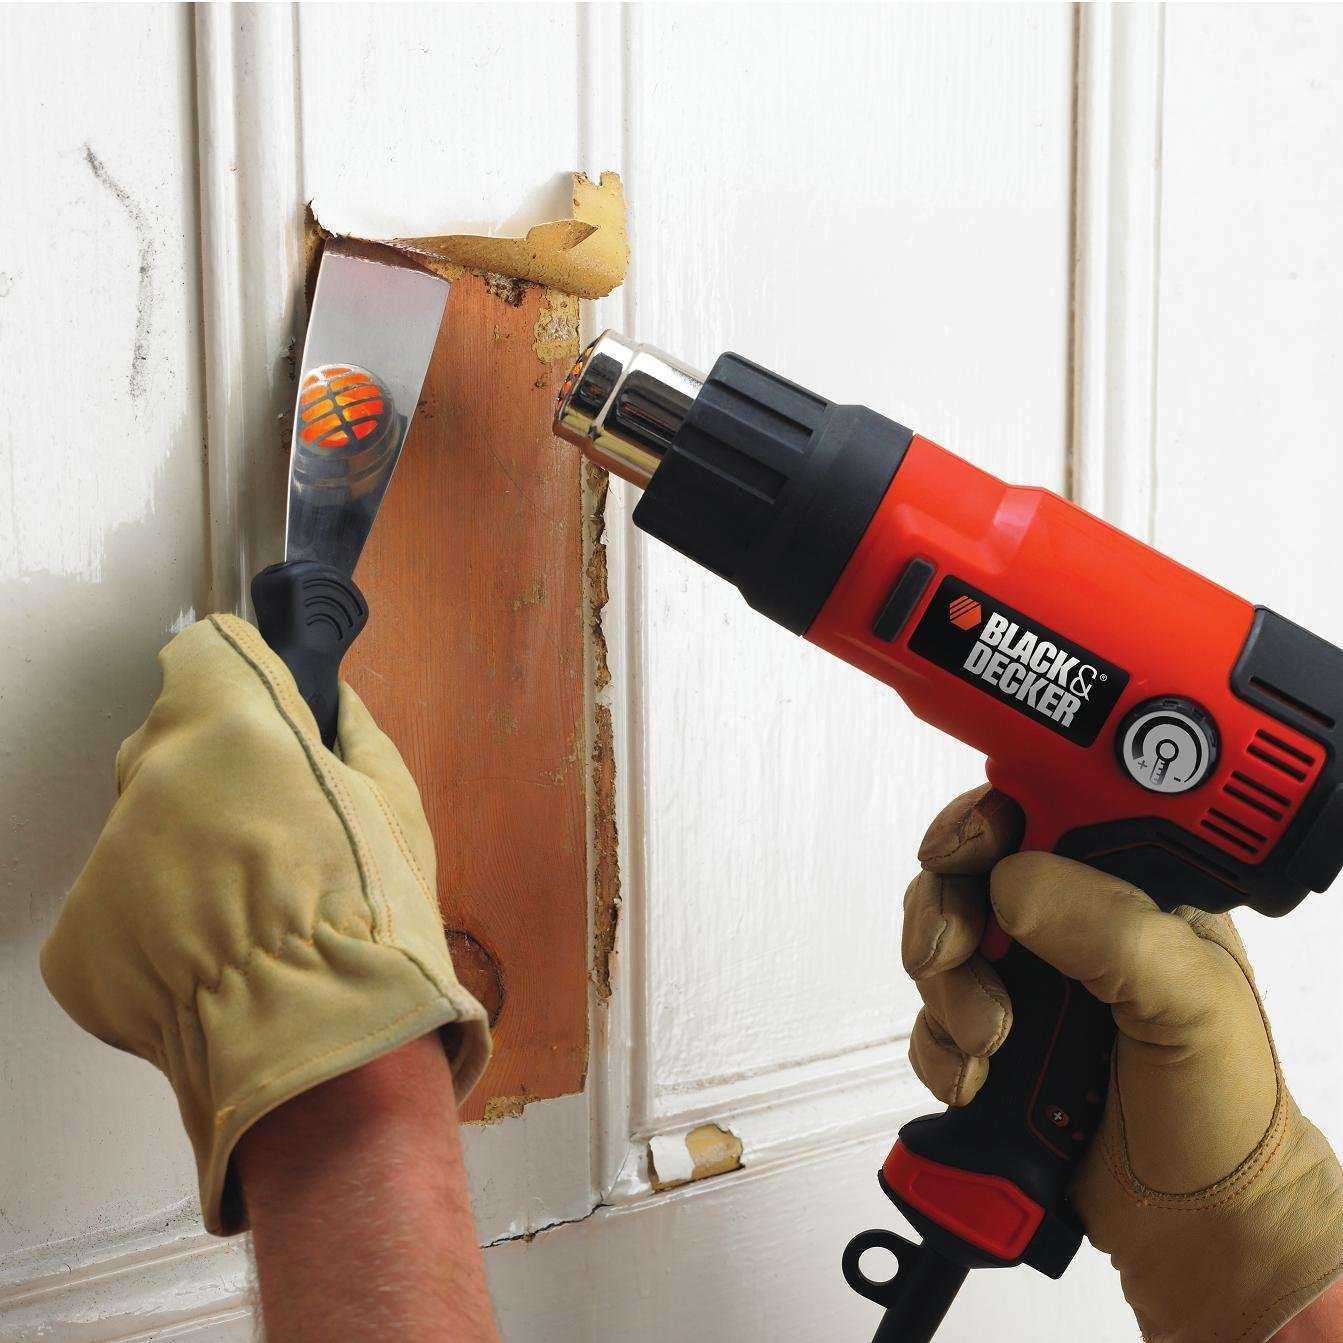 Как удалить старую краску с деревянной поверхности в домашних условиях?